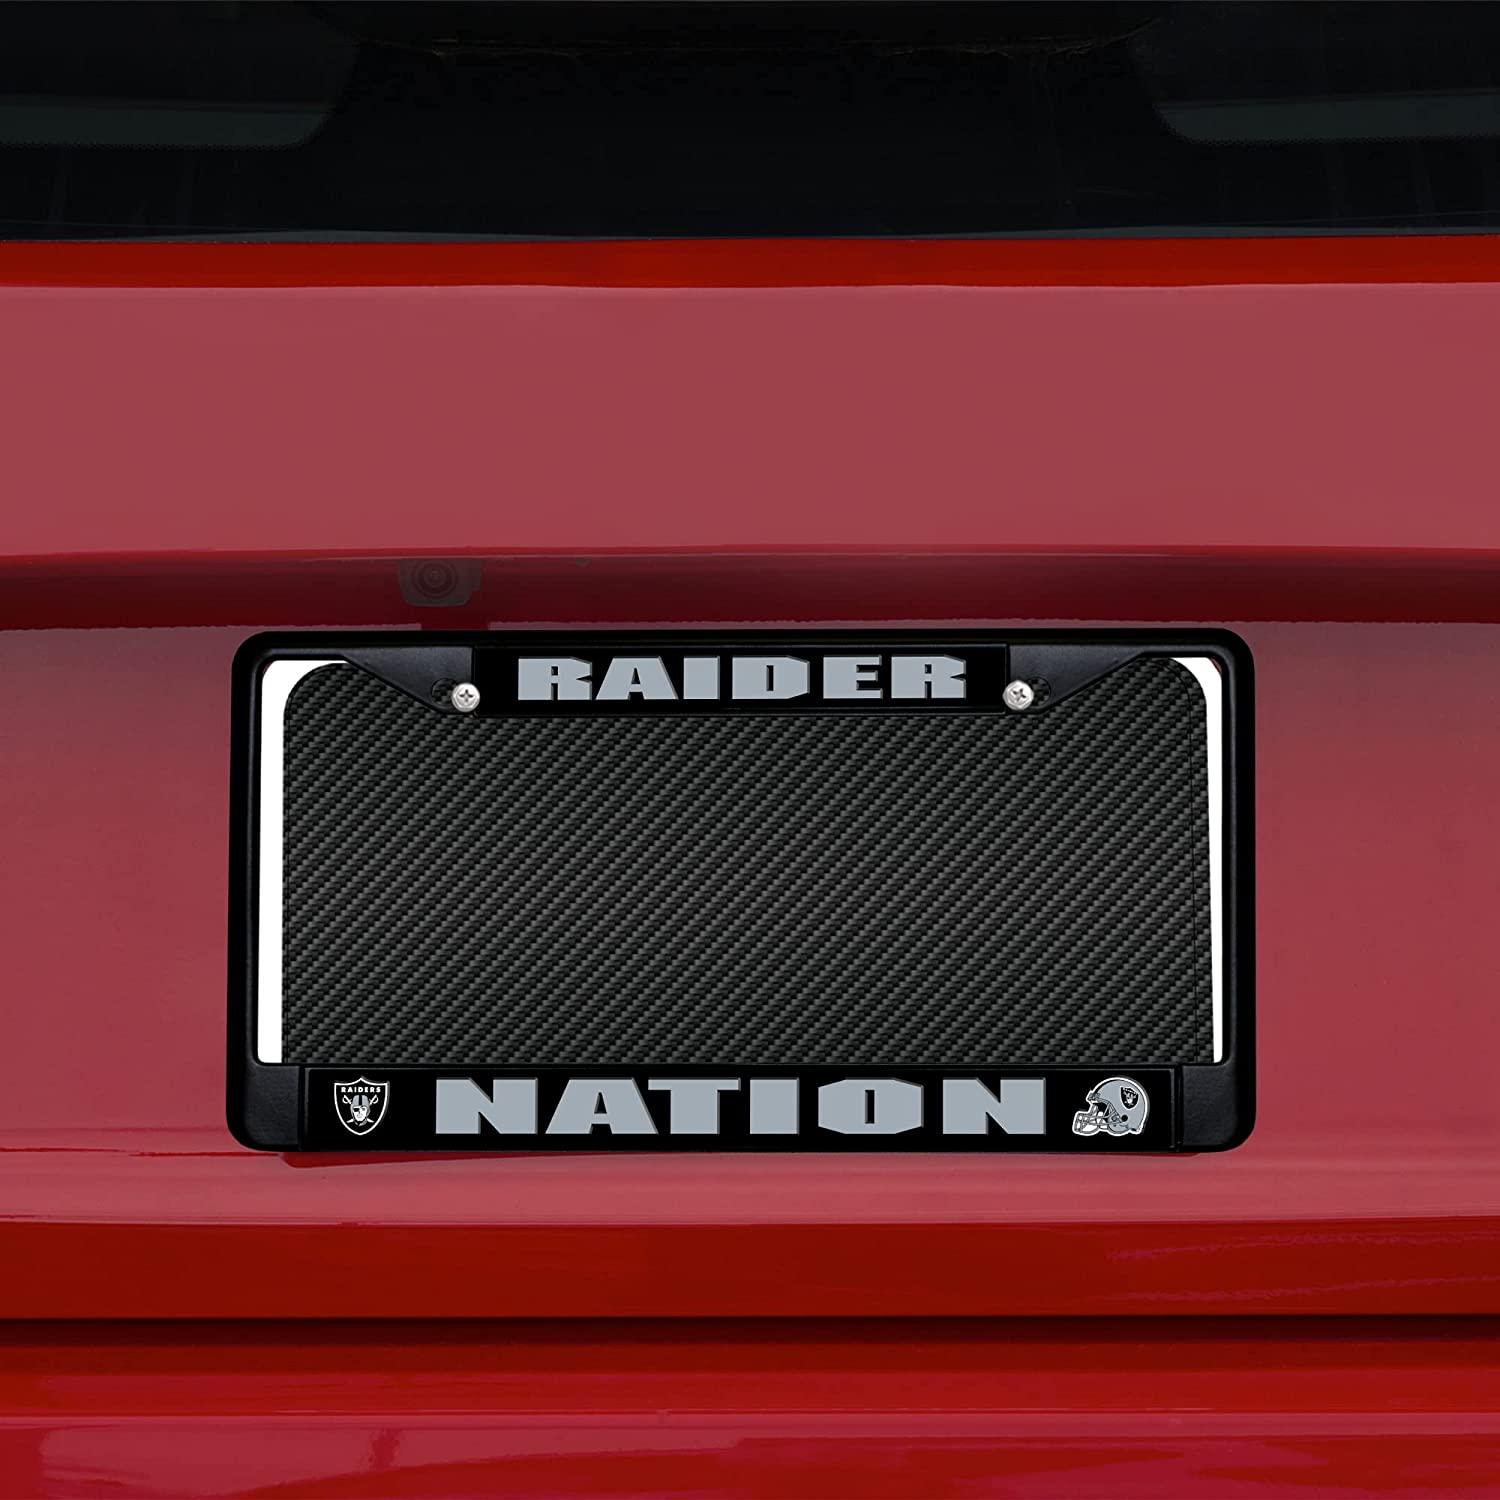 LV Raiders Bling License Plate Frame